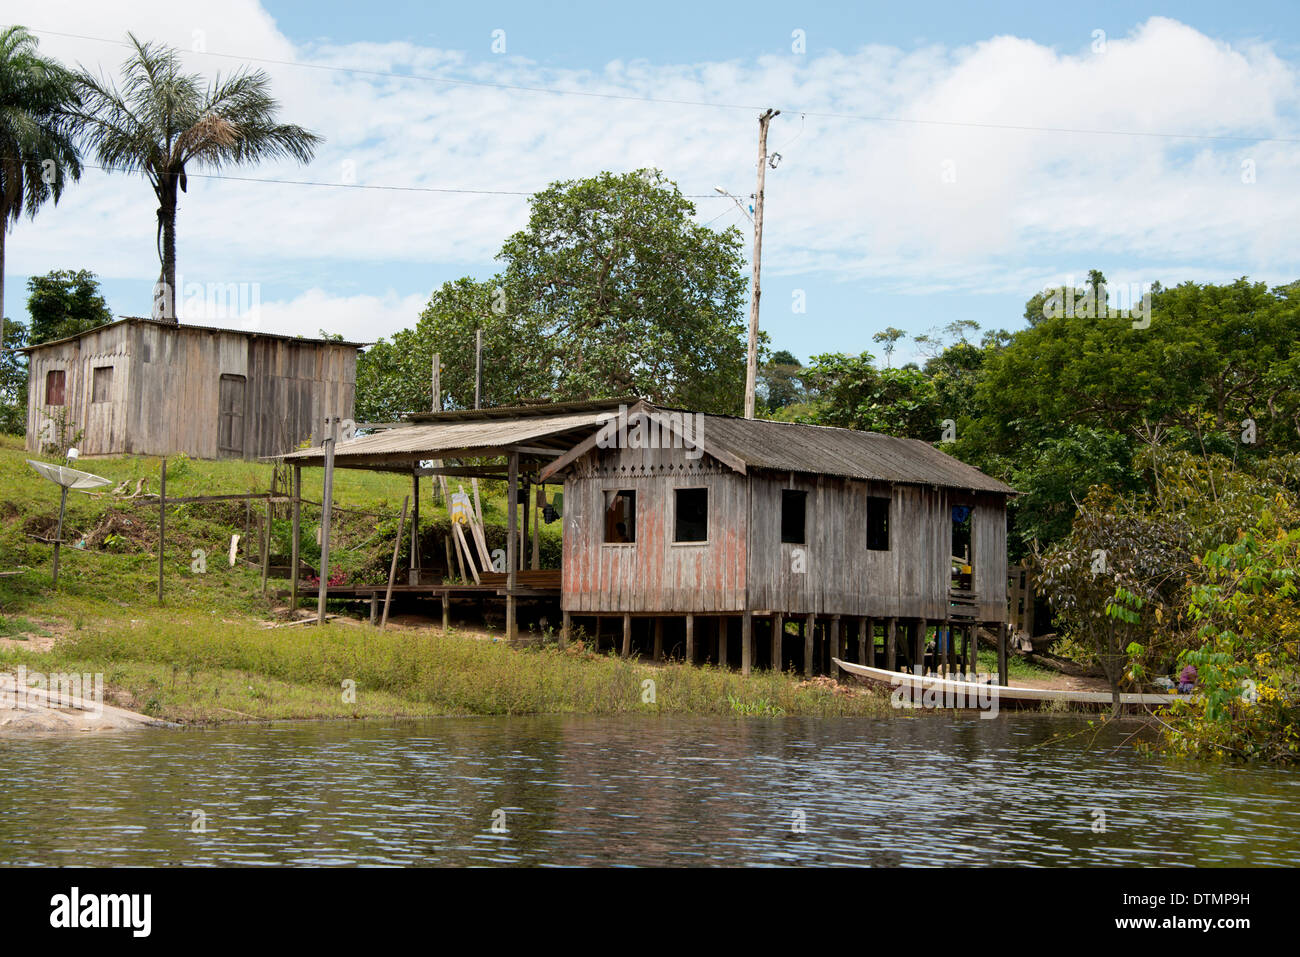 Il Brasile, Amazon, Valeria River, Boca da Valeria. Tipico stilted Amazon home lungo il fiume Valeria. Foto Stock